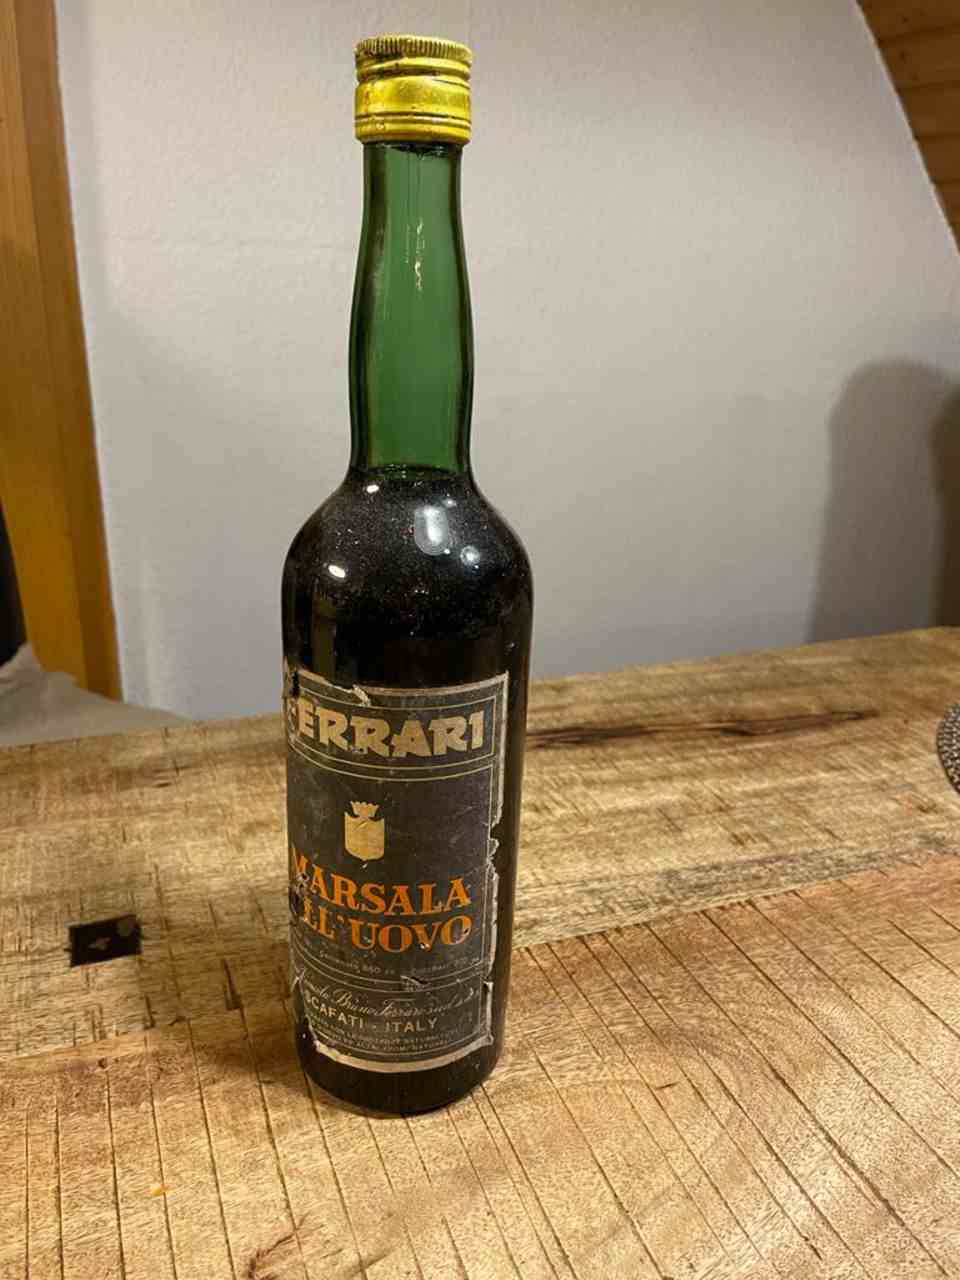 Old bottle of Ferrari wine